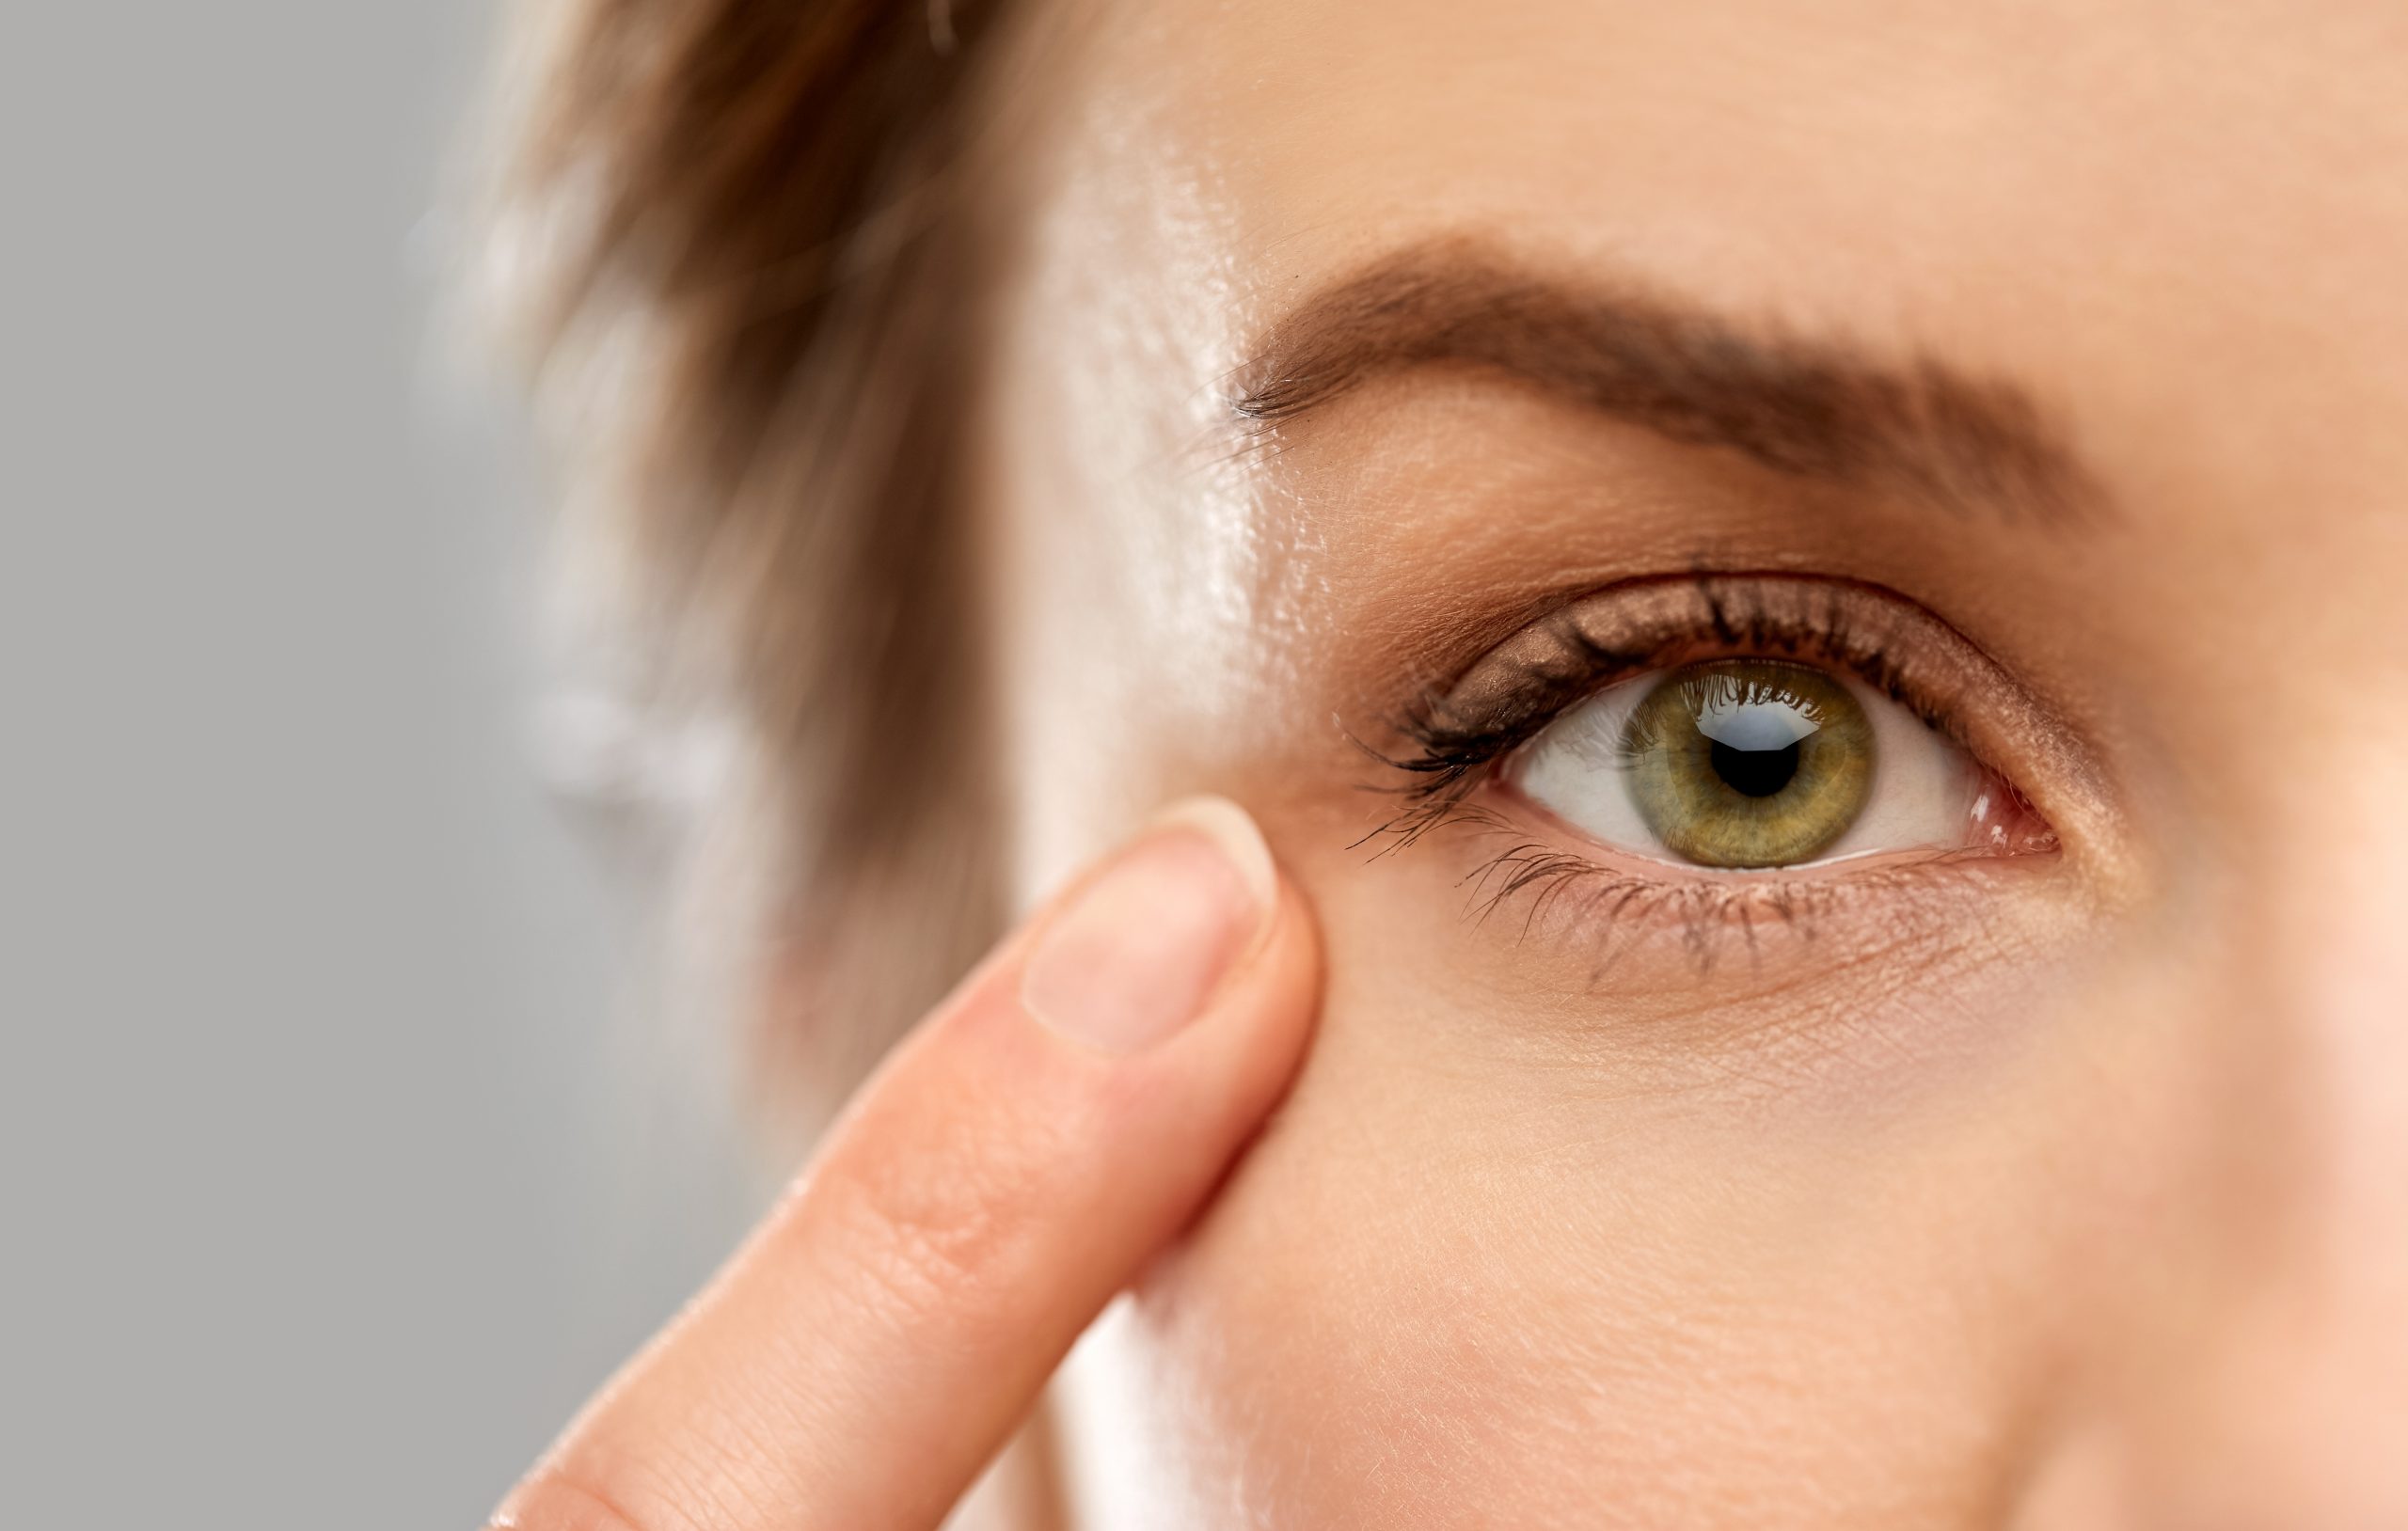 glaucoma-se-nao-ha-sintomas-como-detectar-a-doenca